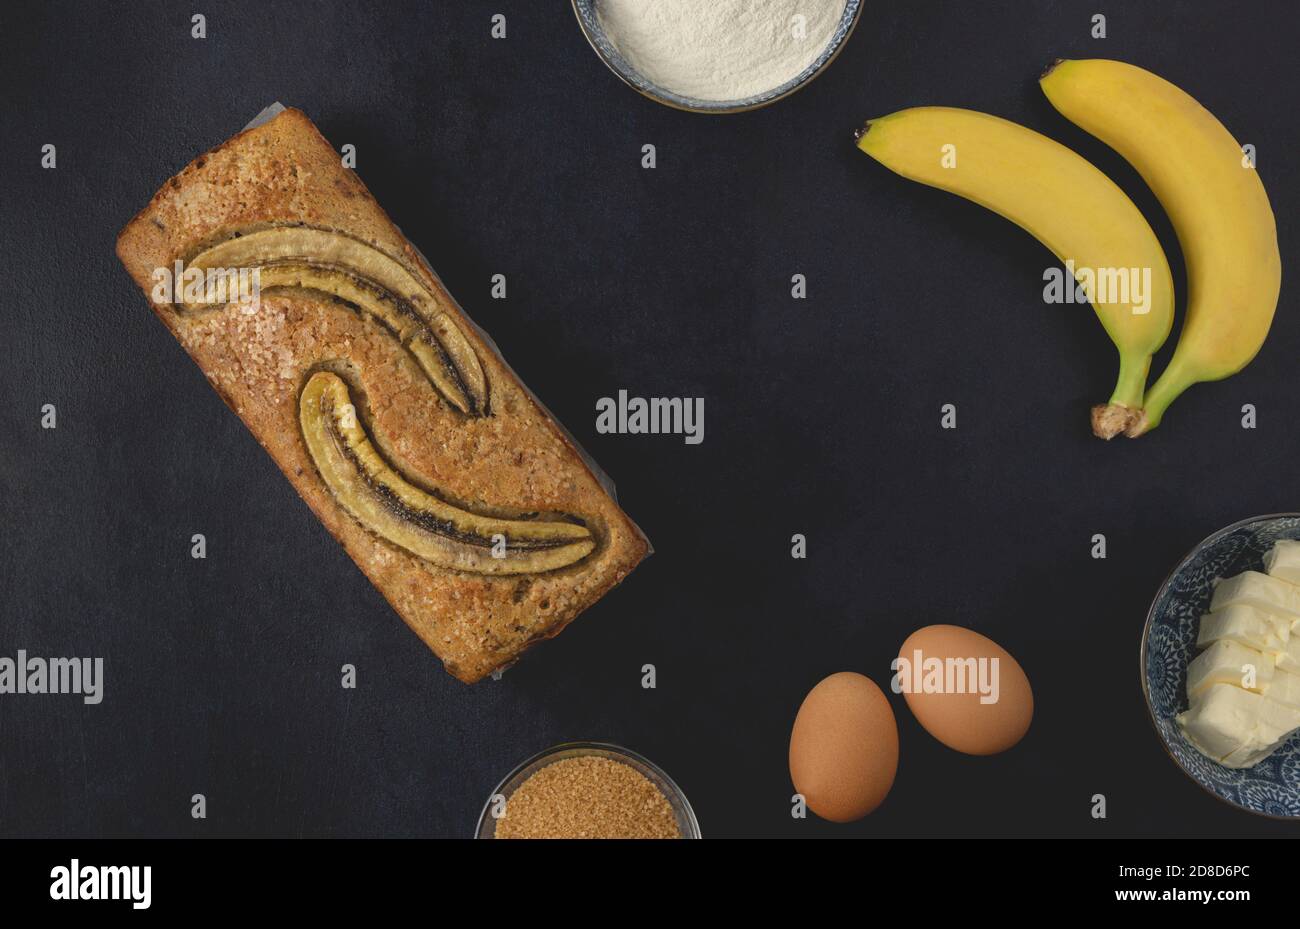 Hausgemachte Bananennuss Brot Laib isoliert auf dem dunklen Hintergrund. Zutaten für Bananenbrot. Draufsicht, flach liegend. Stockfoto